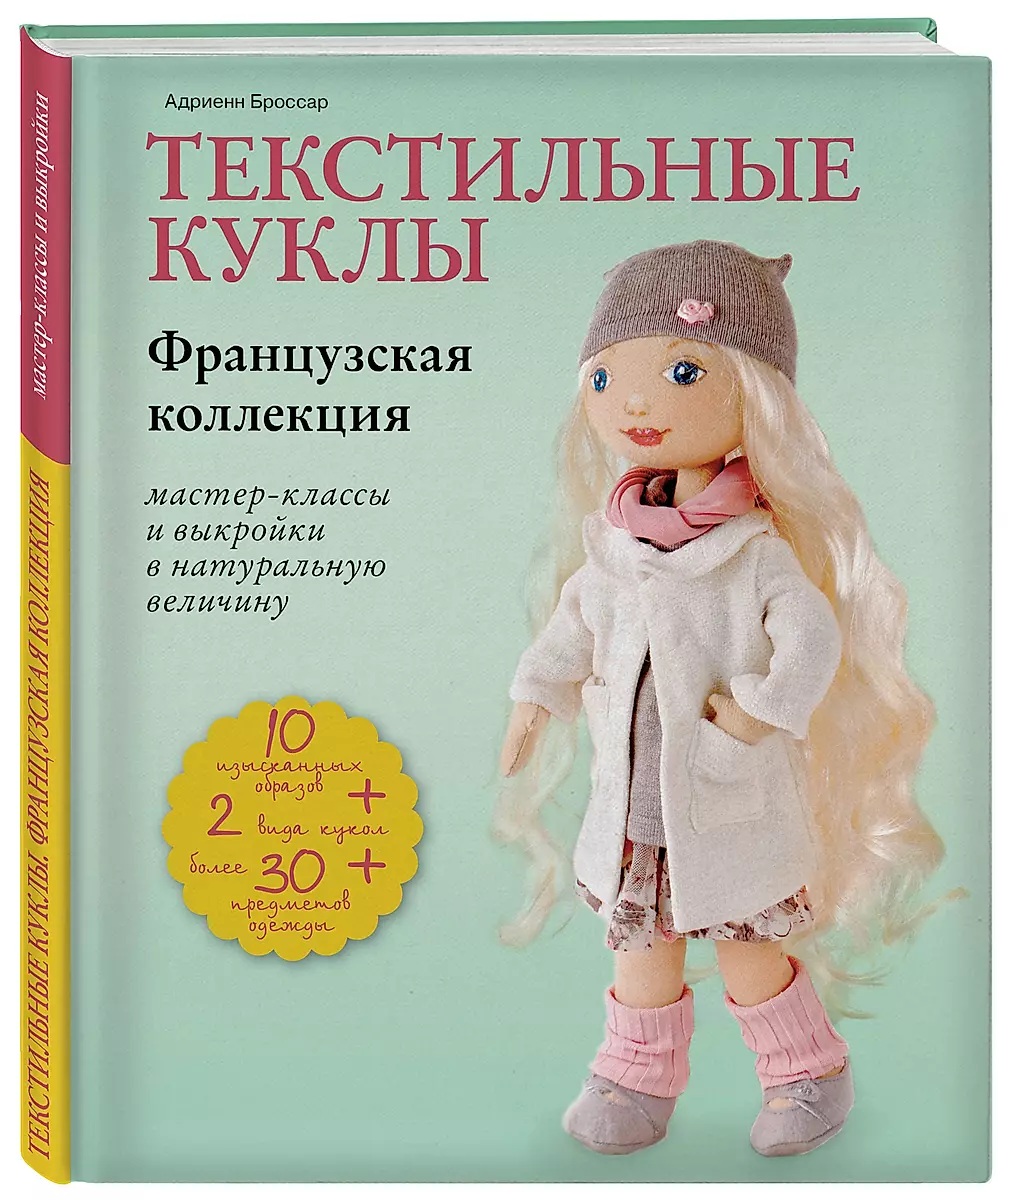 Одежда для кукол своими руками: простые способы и лайфхаки — luchistii-sudak.ru